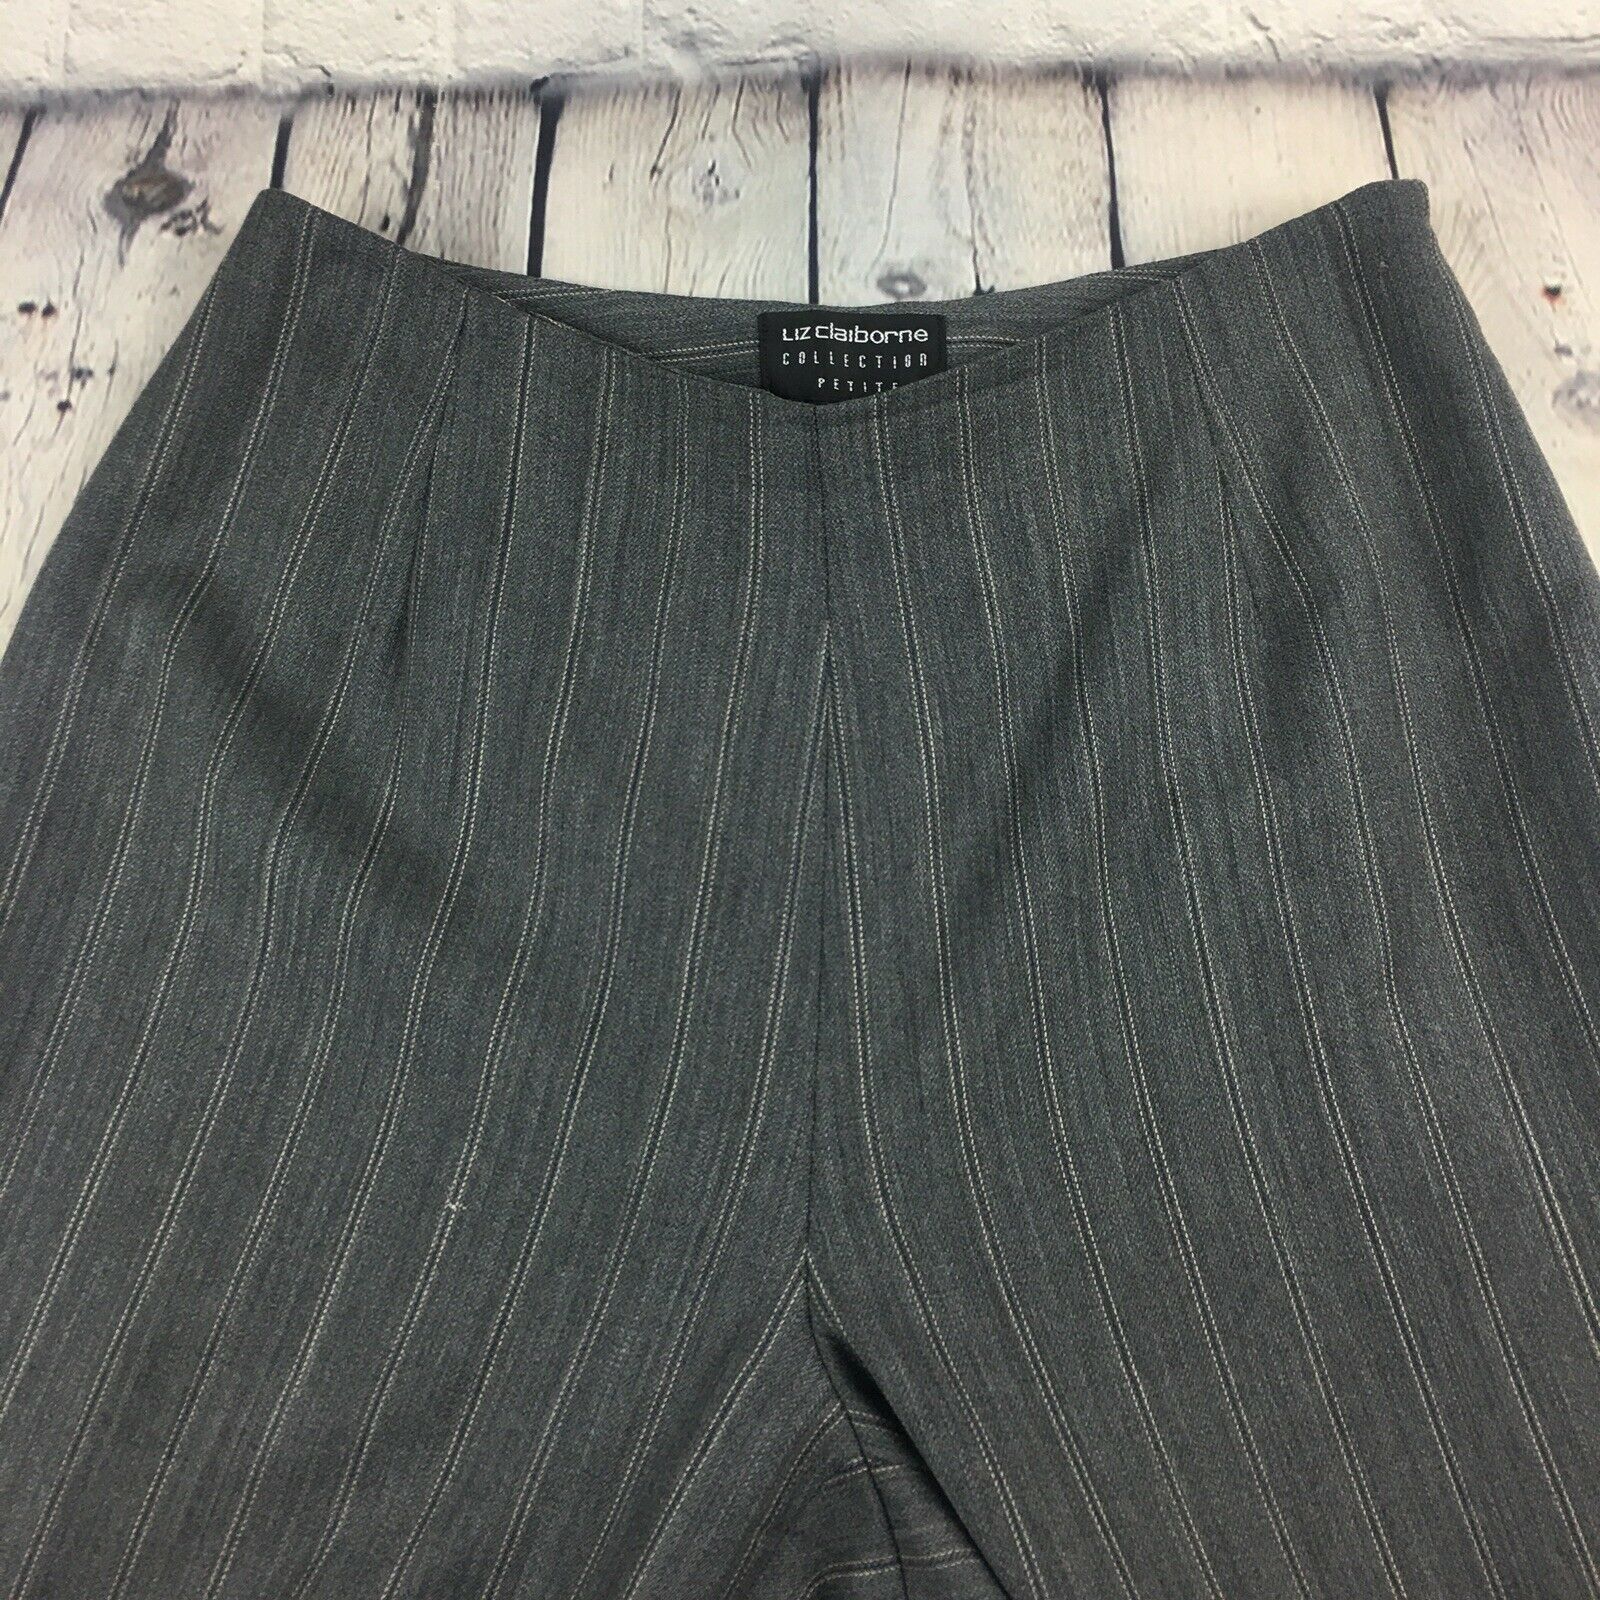 Liz Claiborne Collection Women's 2 Dress Pants Gray Petite Stripes - Pants